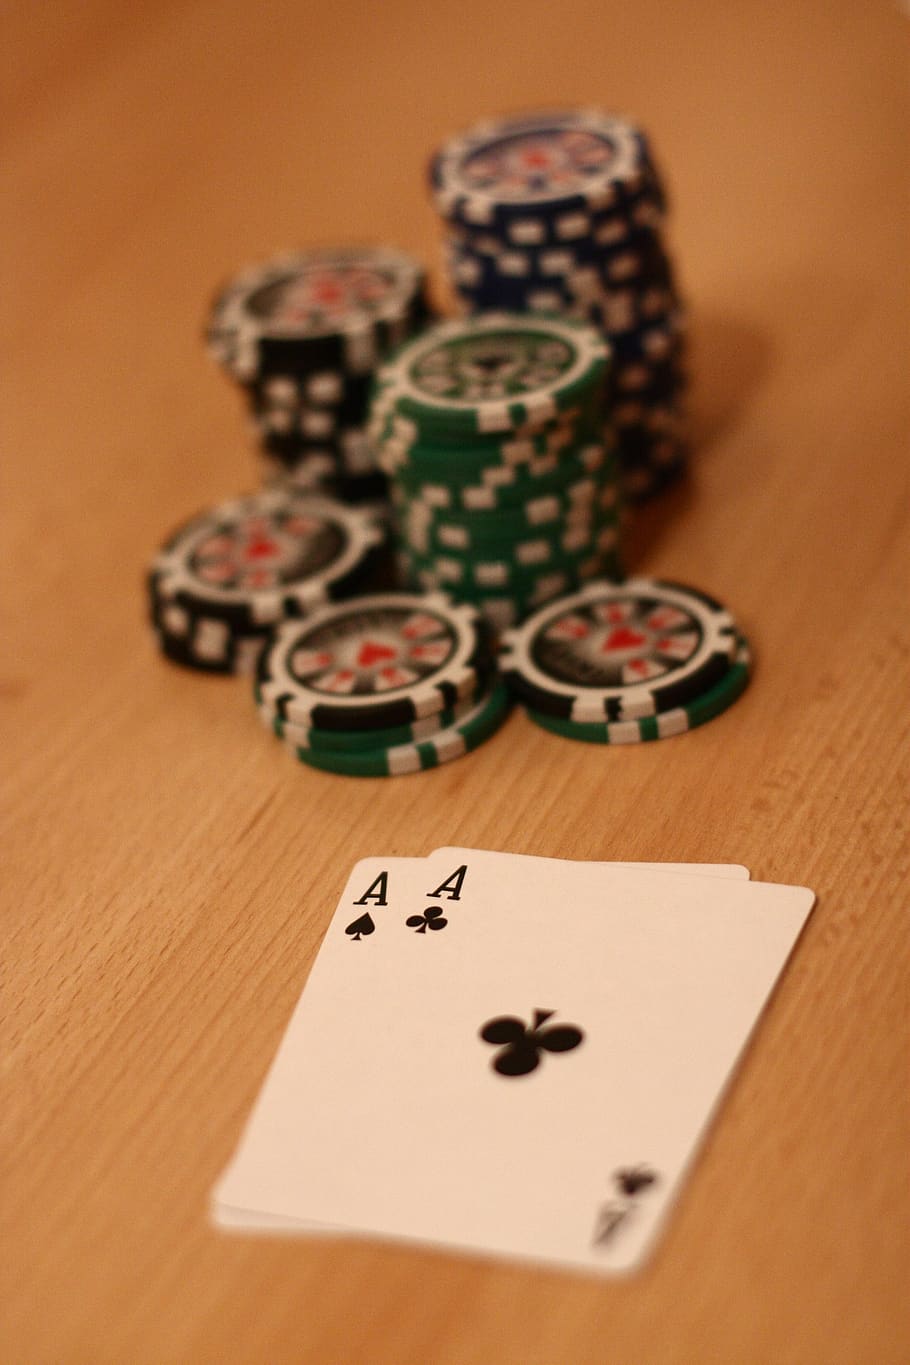 póquer, ficha de pôquer, jogar pôquer, jogar, jogos de azar, ganhar, cassino, jogo de cartas, risco, lucro